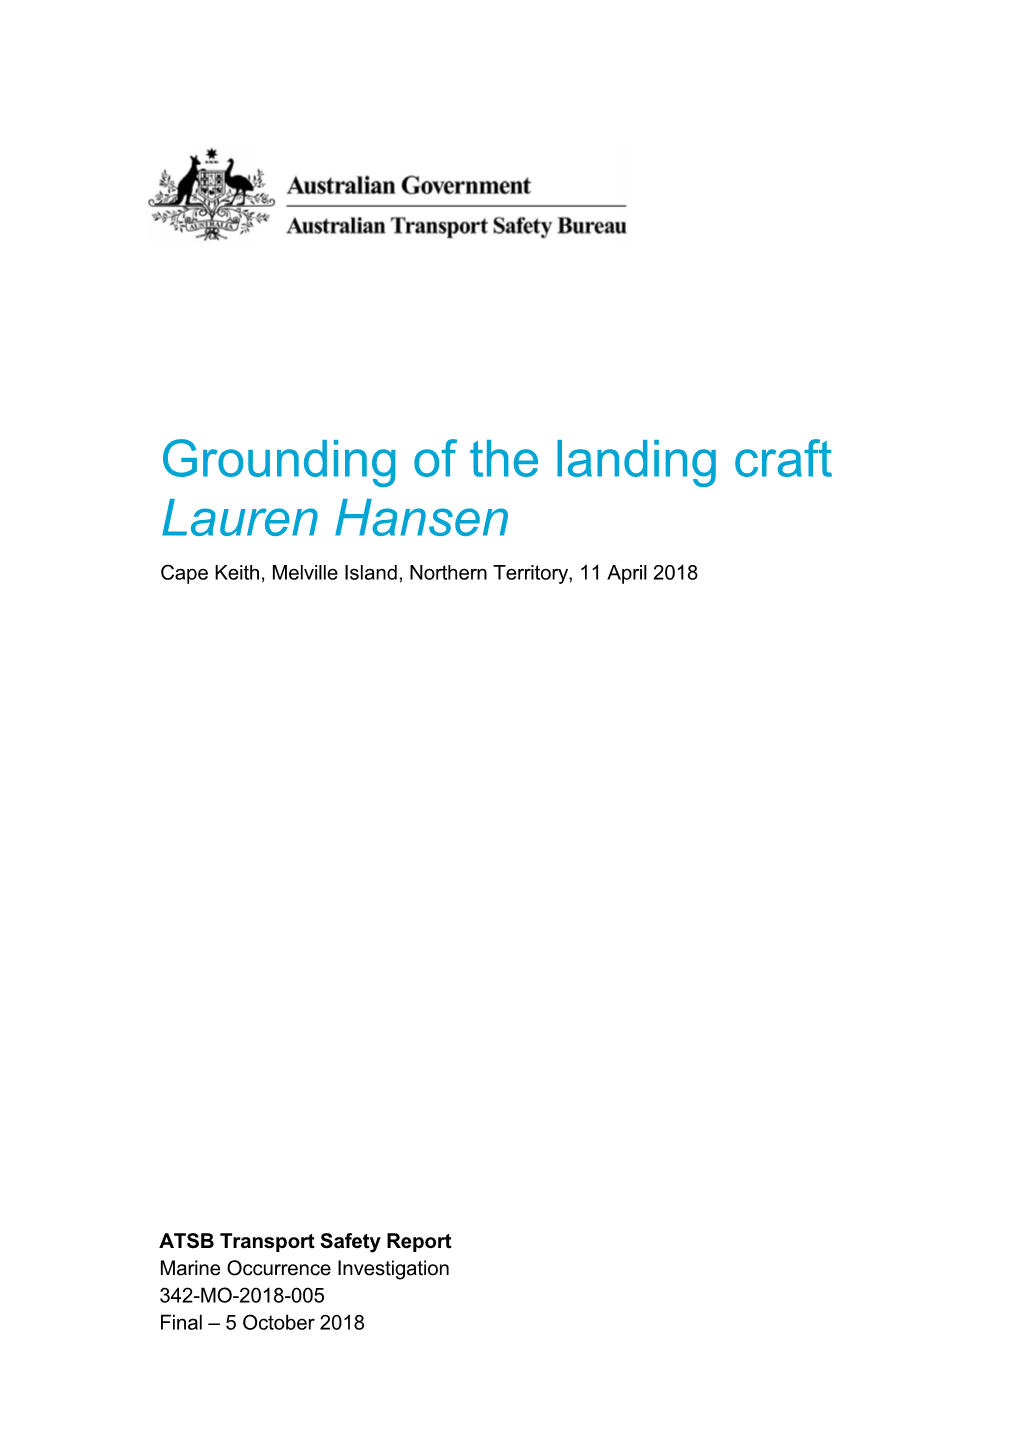 Grounding of the Landing Craft Lauren Hansen, Cape Keith, Melville Island